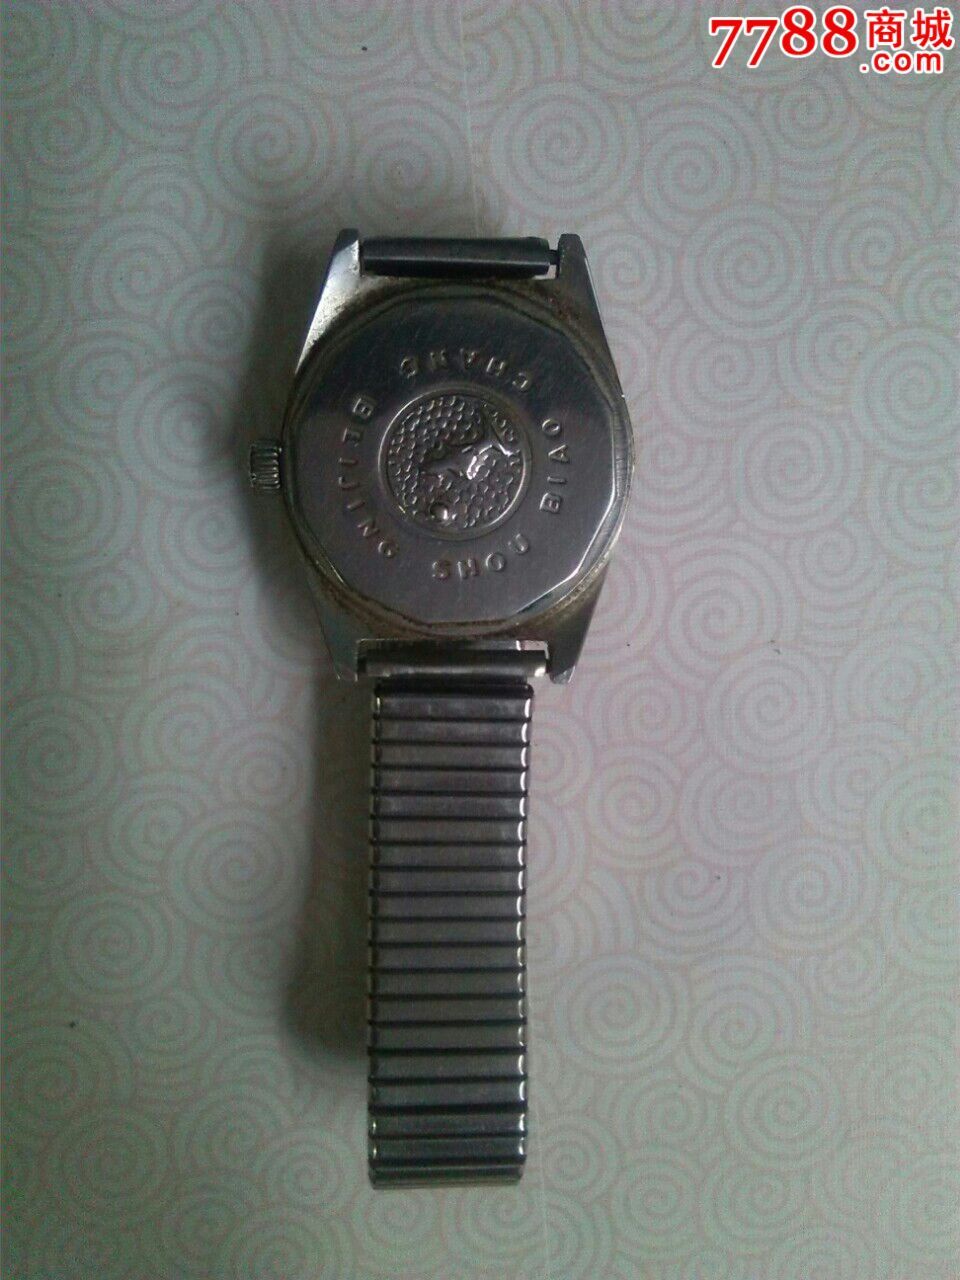 北京双菱20钻手表图片